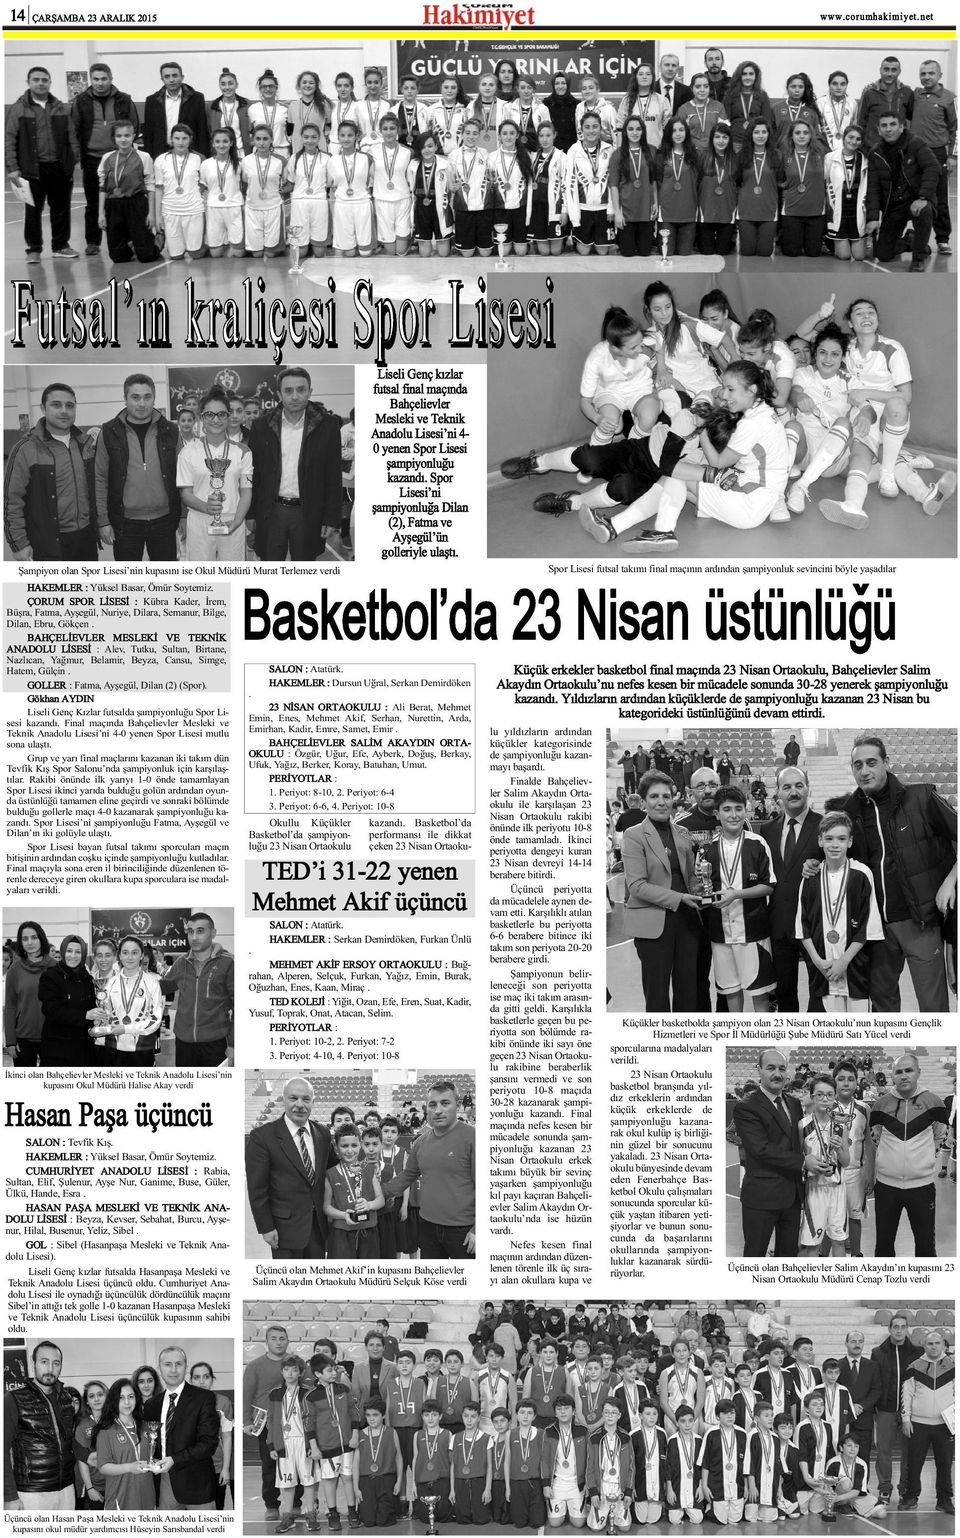 Basketbol da 23 Nisan üstünlüðü Þampiyon olan Spor Lisesi nin kupasýný ise Okul Müdürü Murat Terlemez verdi HAKEMLER : Yüksel Basar, Ömür Soytemiz.